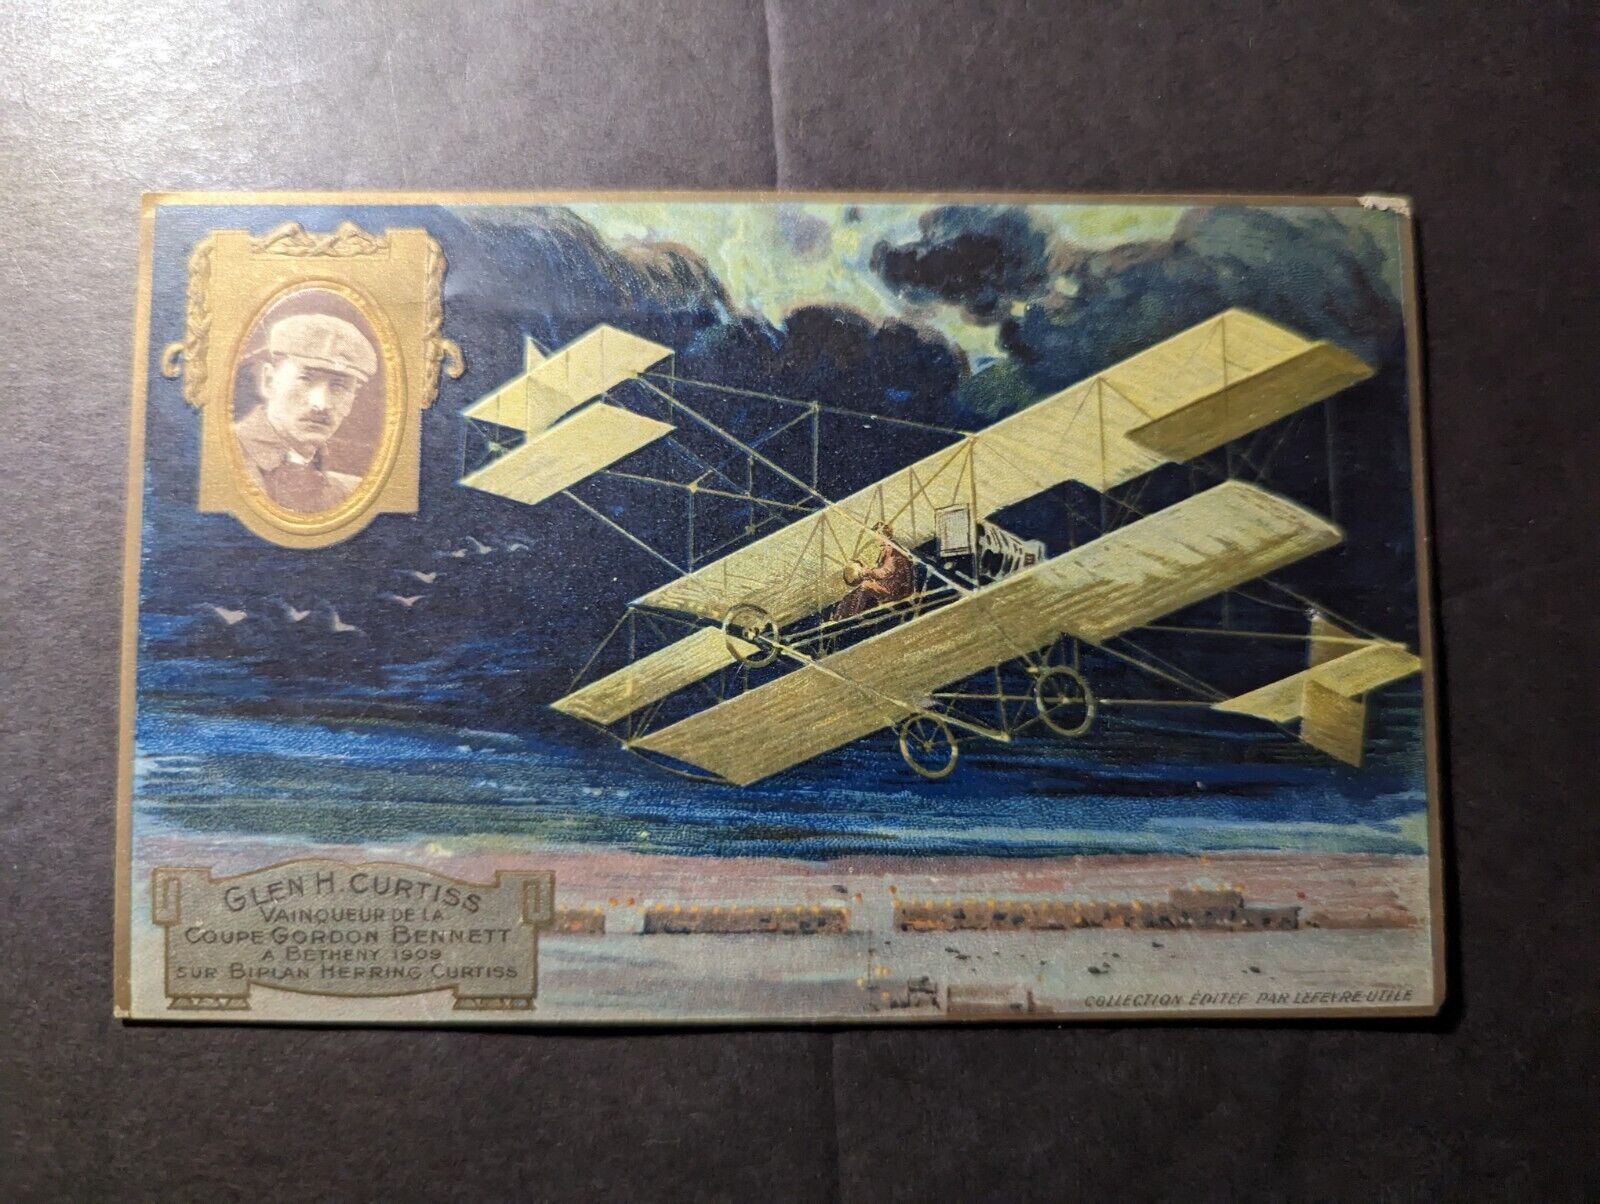 Mint France Aviation Airplane Postcard Gordon Bennett Cup Winner Glen H Curtiss